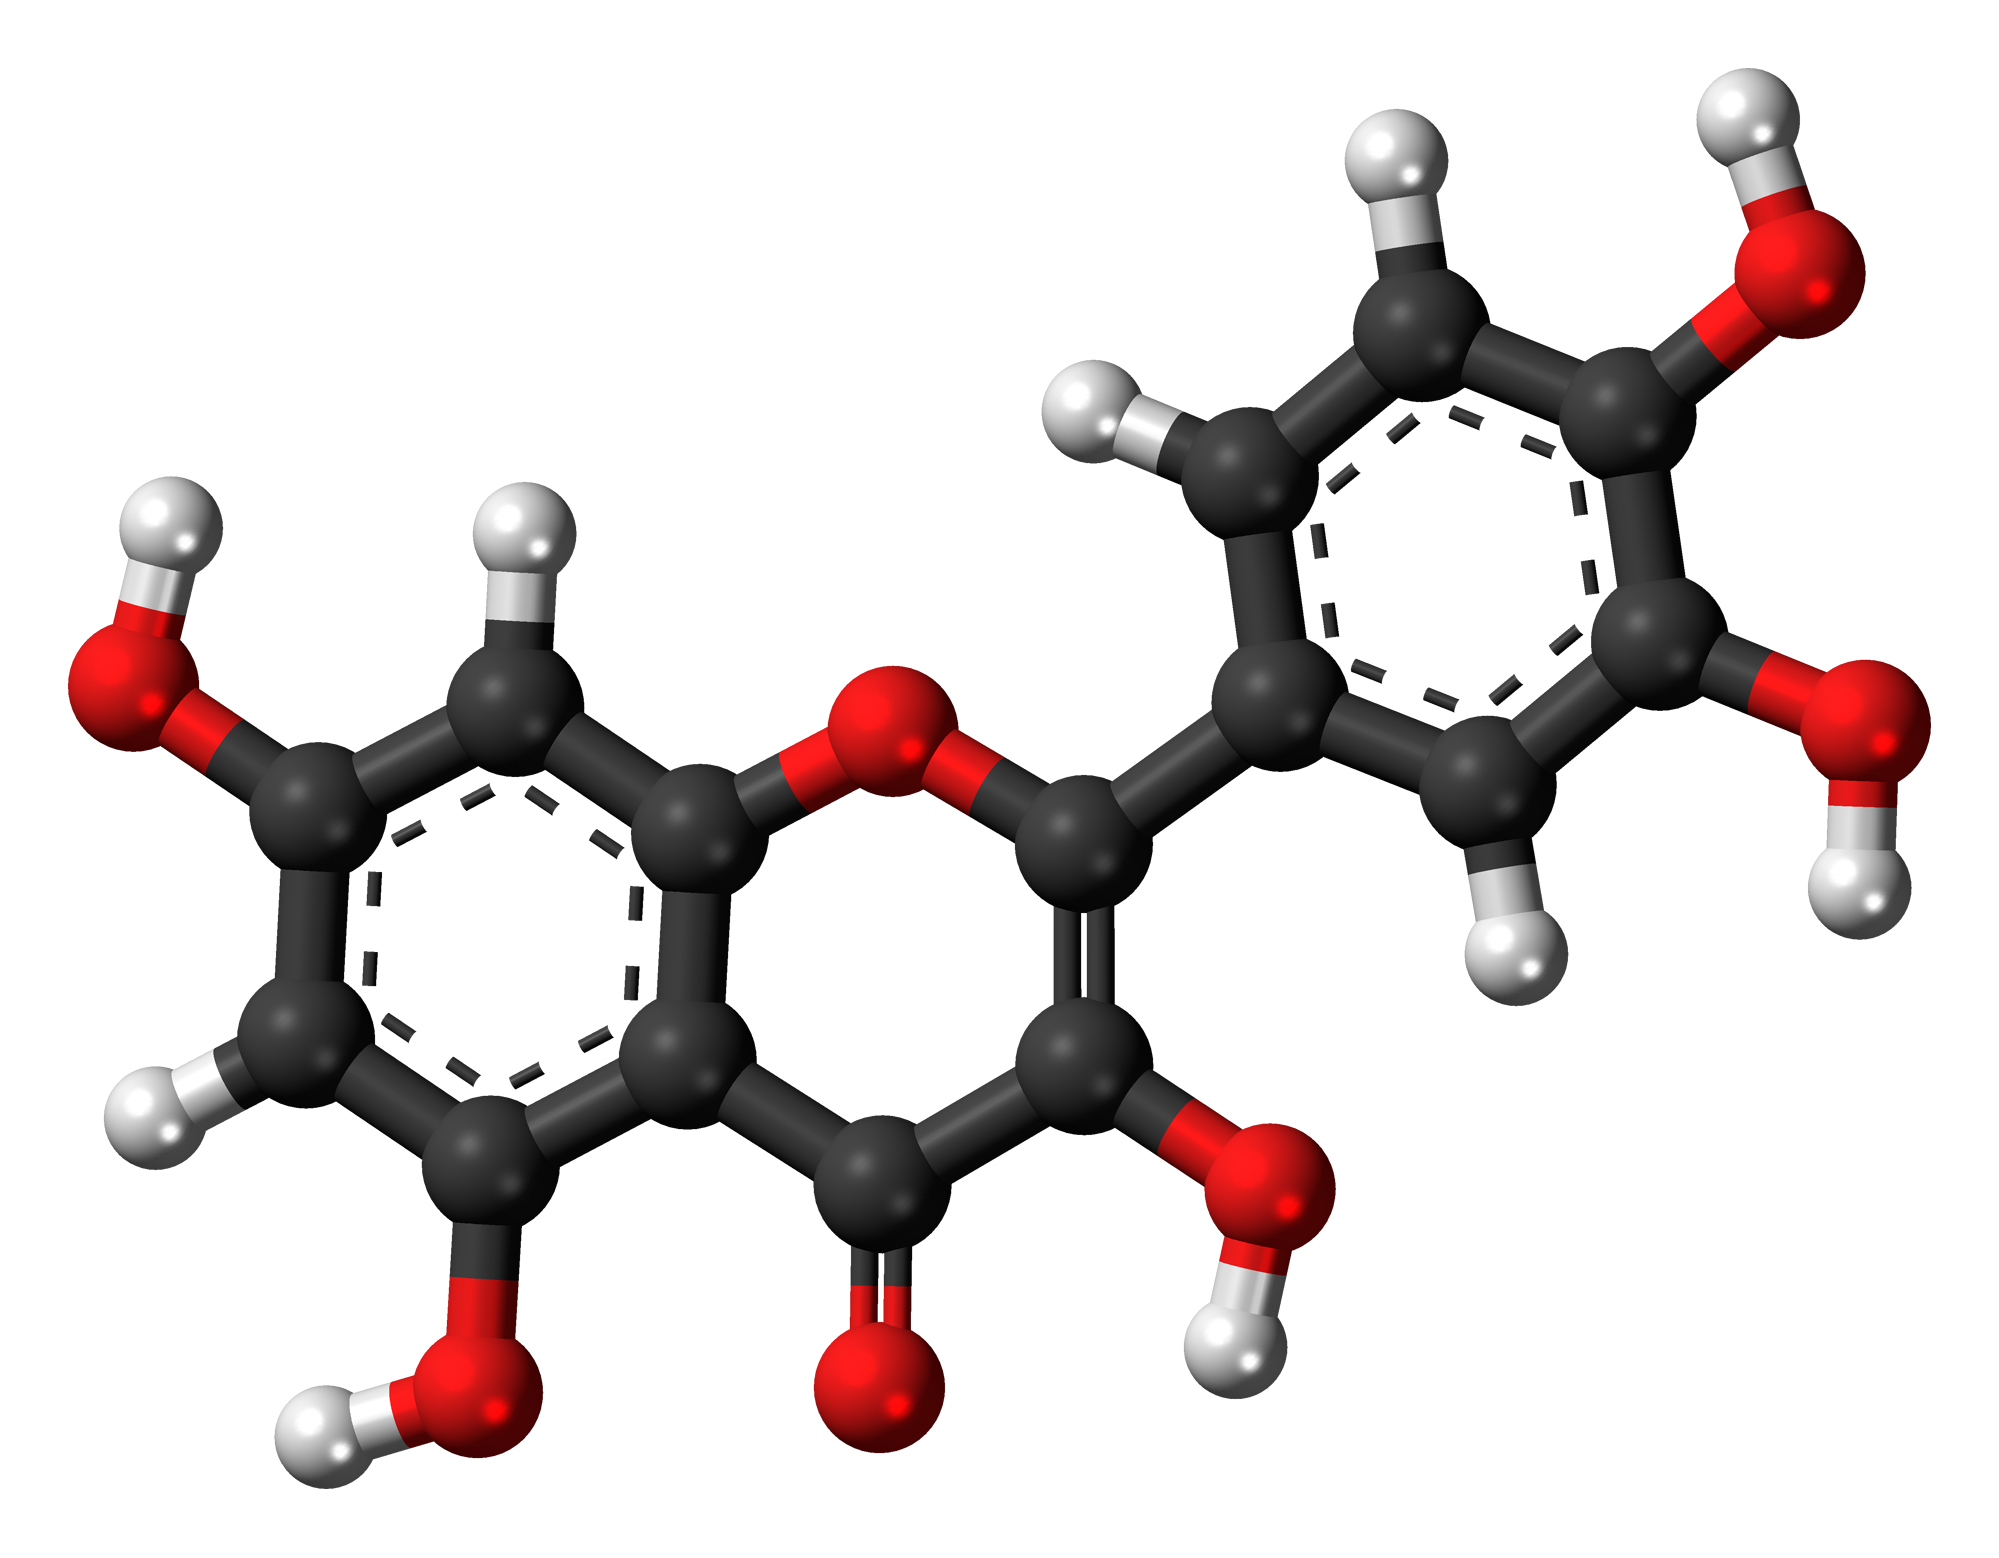 Флавоноид квартицин, содержащийся в лемонграссе, обладает антиоксидантными и противовоспалительными свойствами